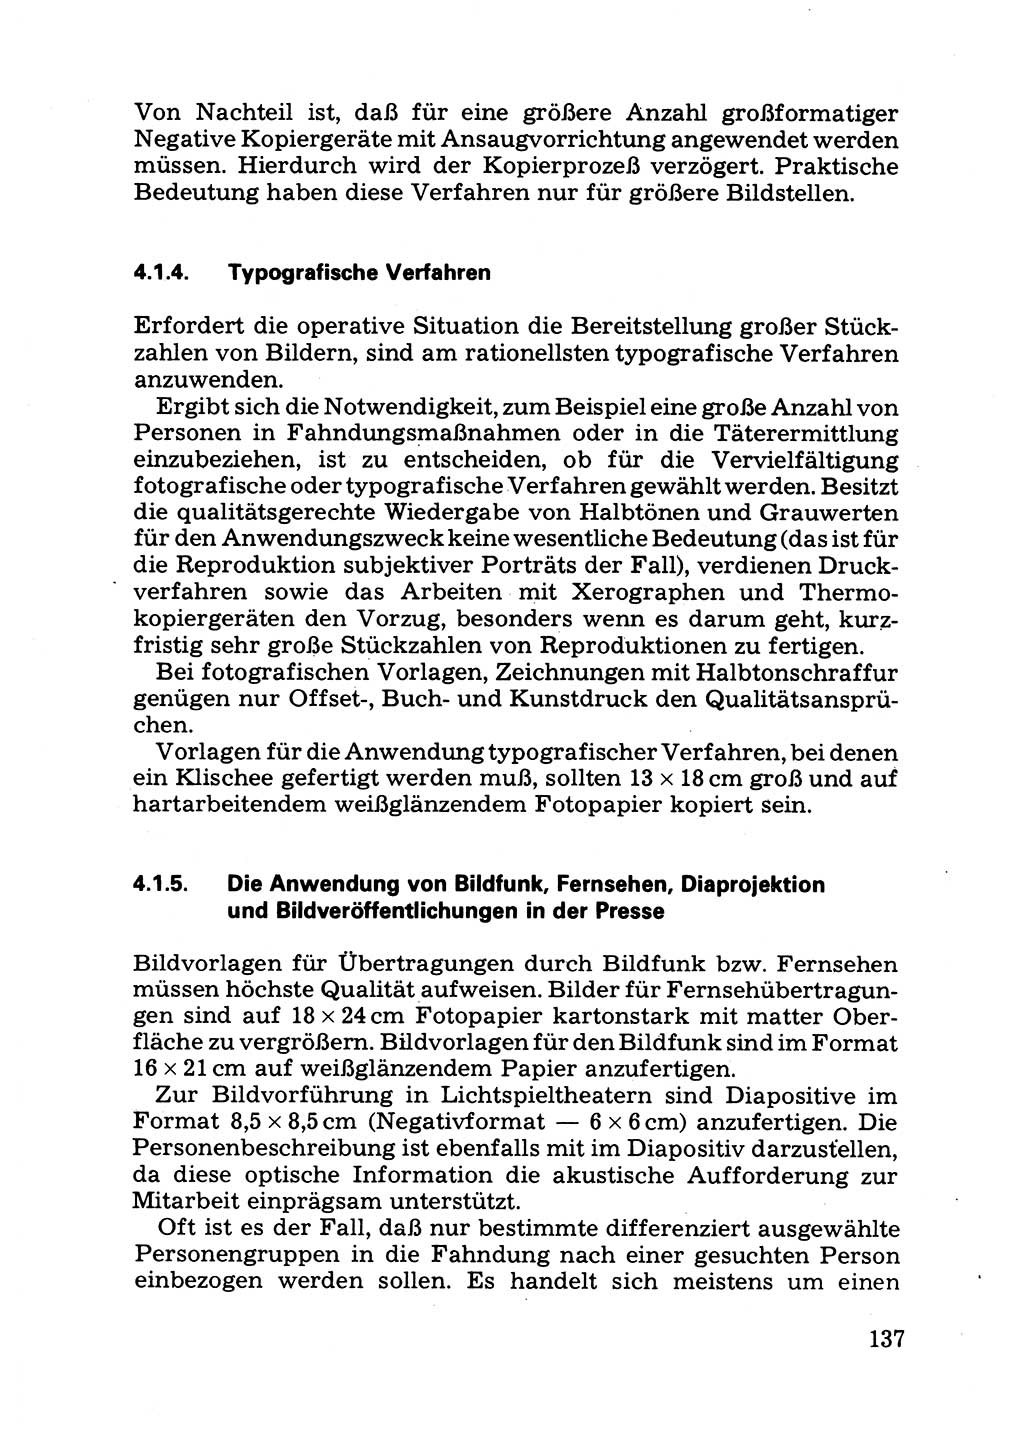 Das subjektive Porträt [Deutsche Demokratische Republik (DDR)] 1981, Seite 137 (Subj. Port. DDR 1981, S. 137)